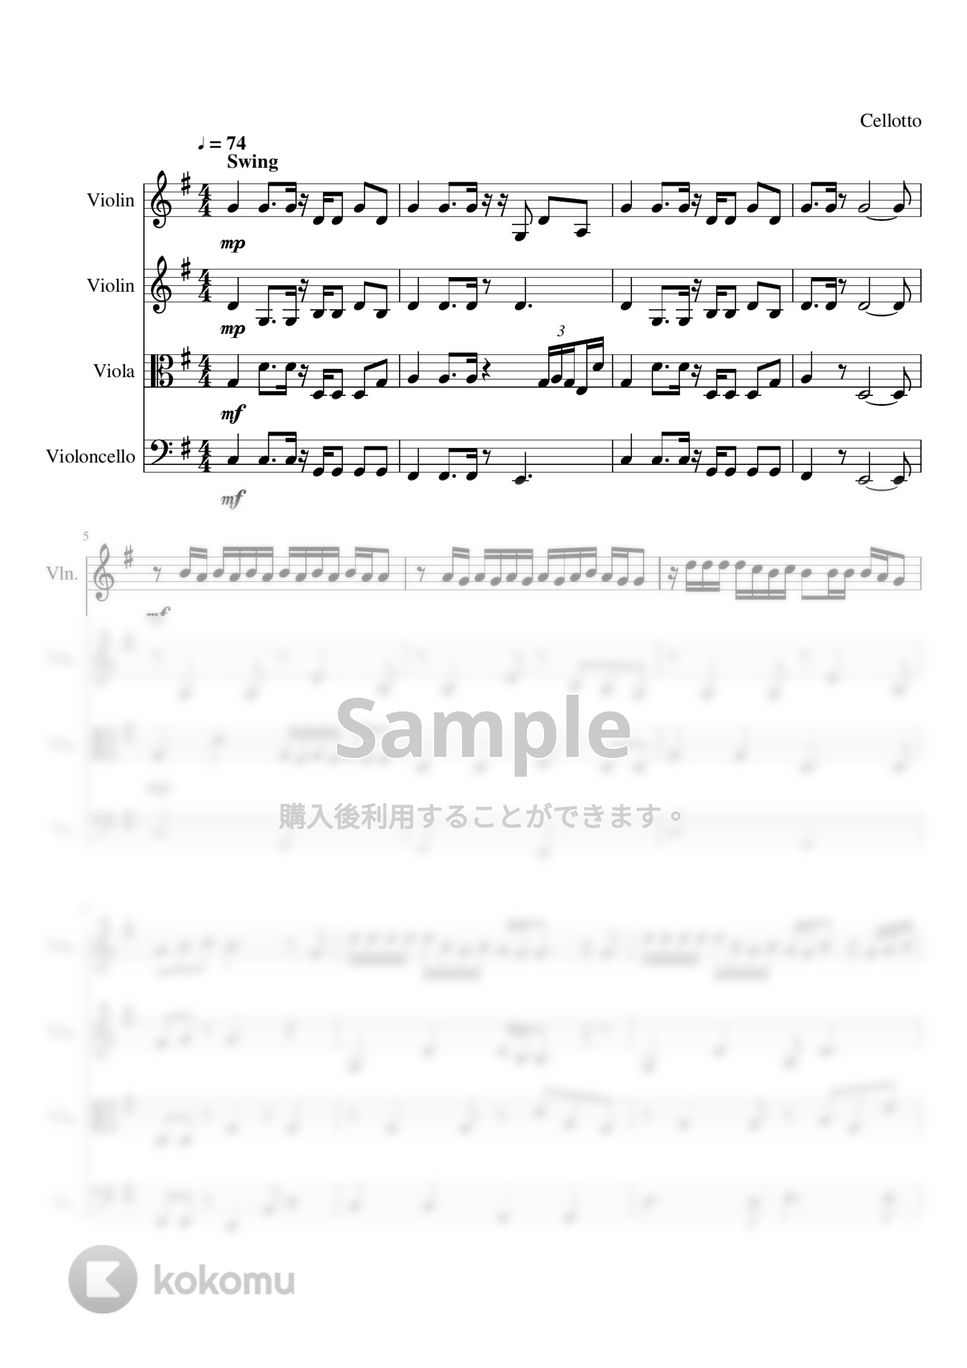 優里 - ドライフラワー (弦楽四重奏) by Cellotto